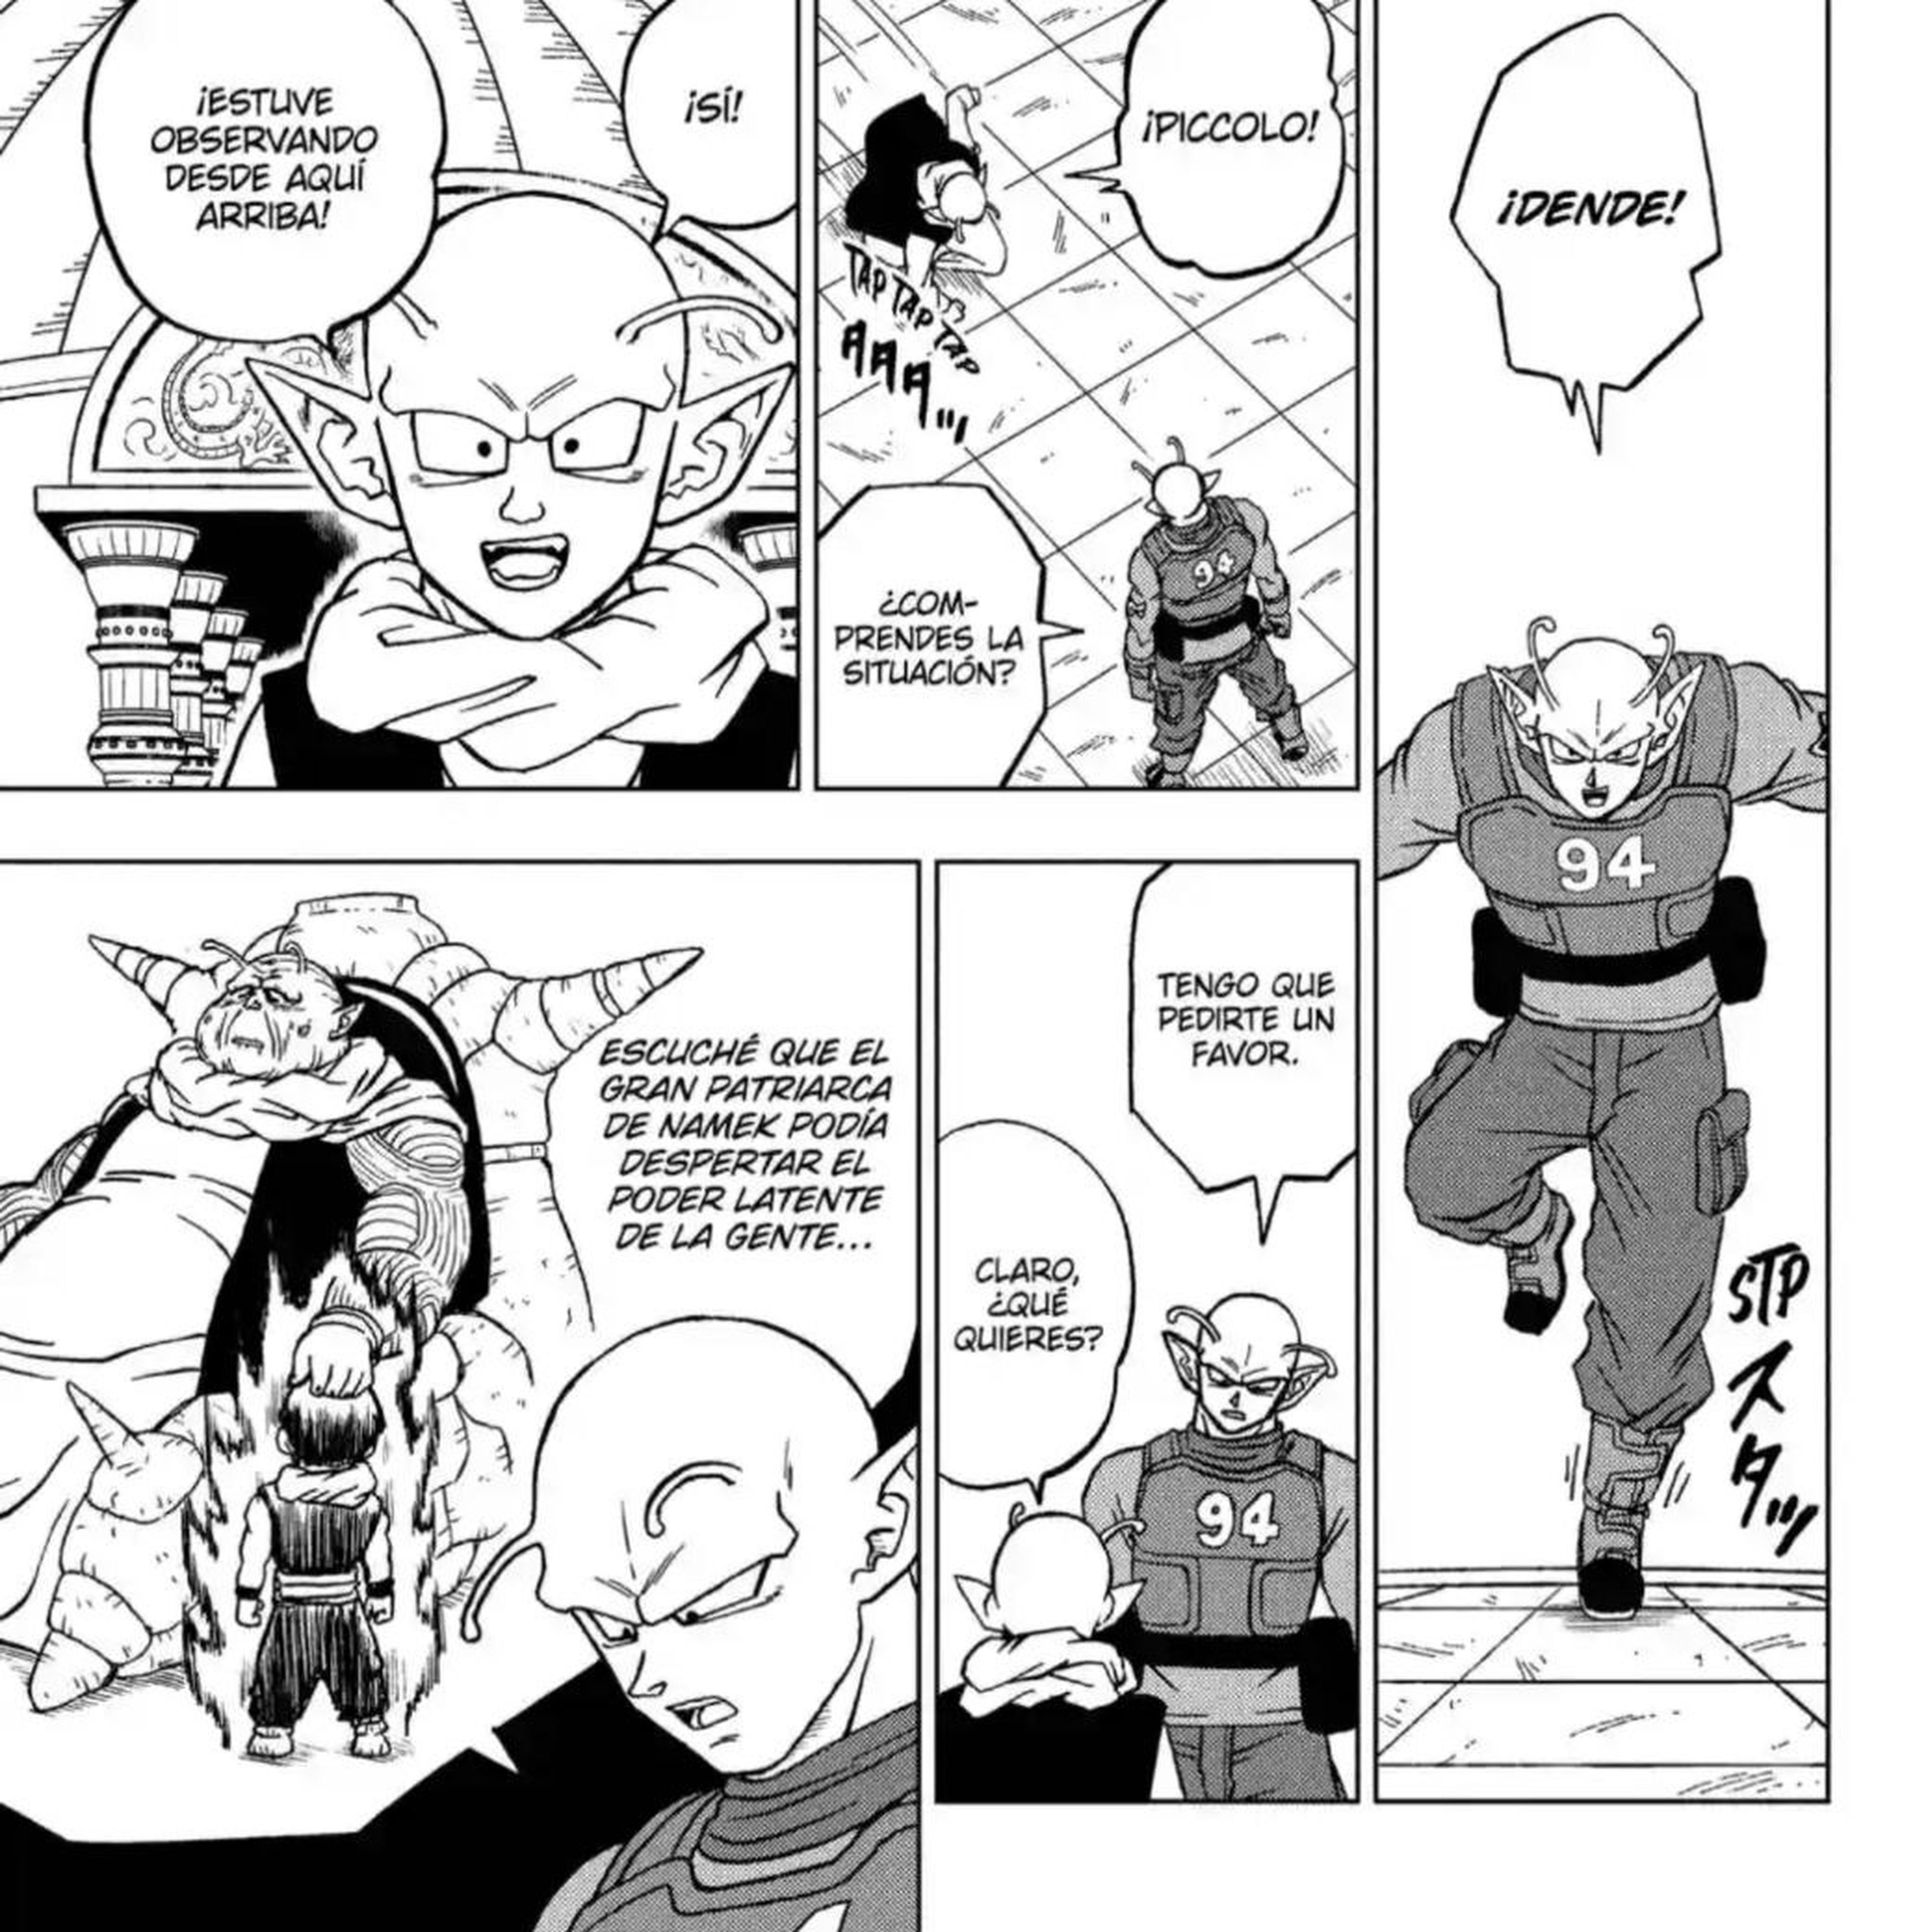 Dragon Ball Super - Crítica del capítulo 93 en el que Piccolo adquiere nuevos poderes gracias a Shenron